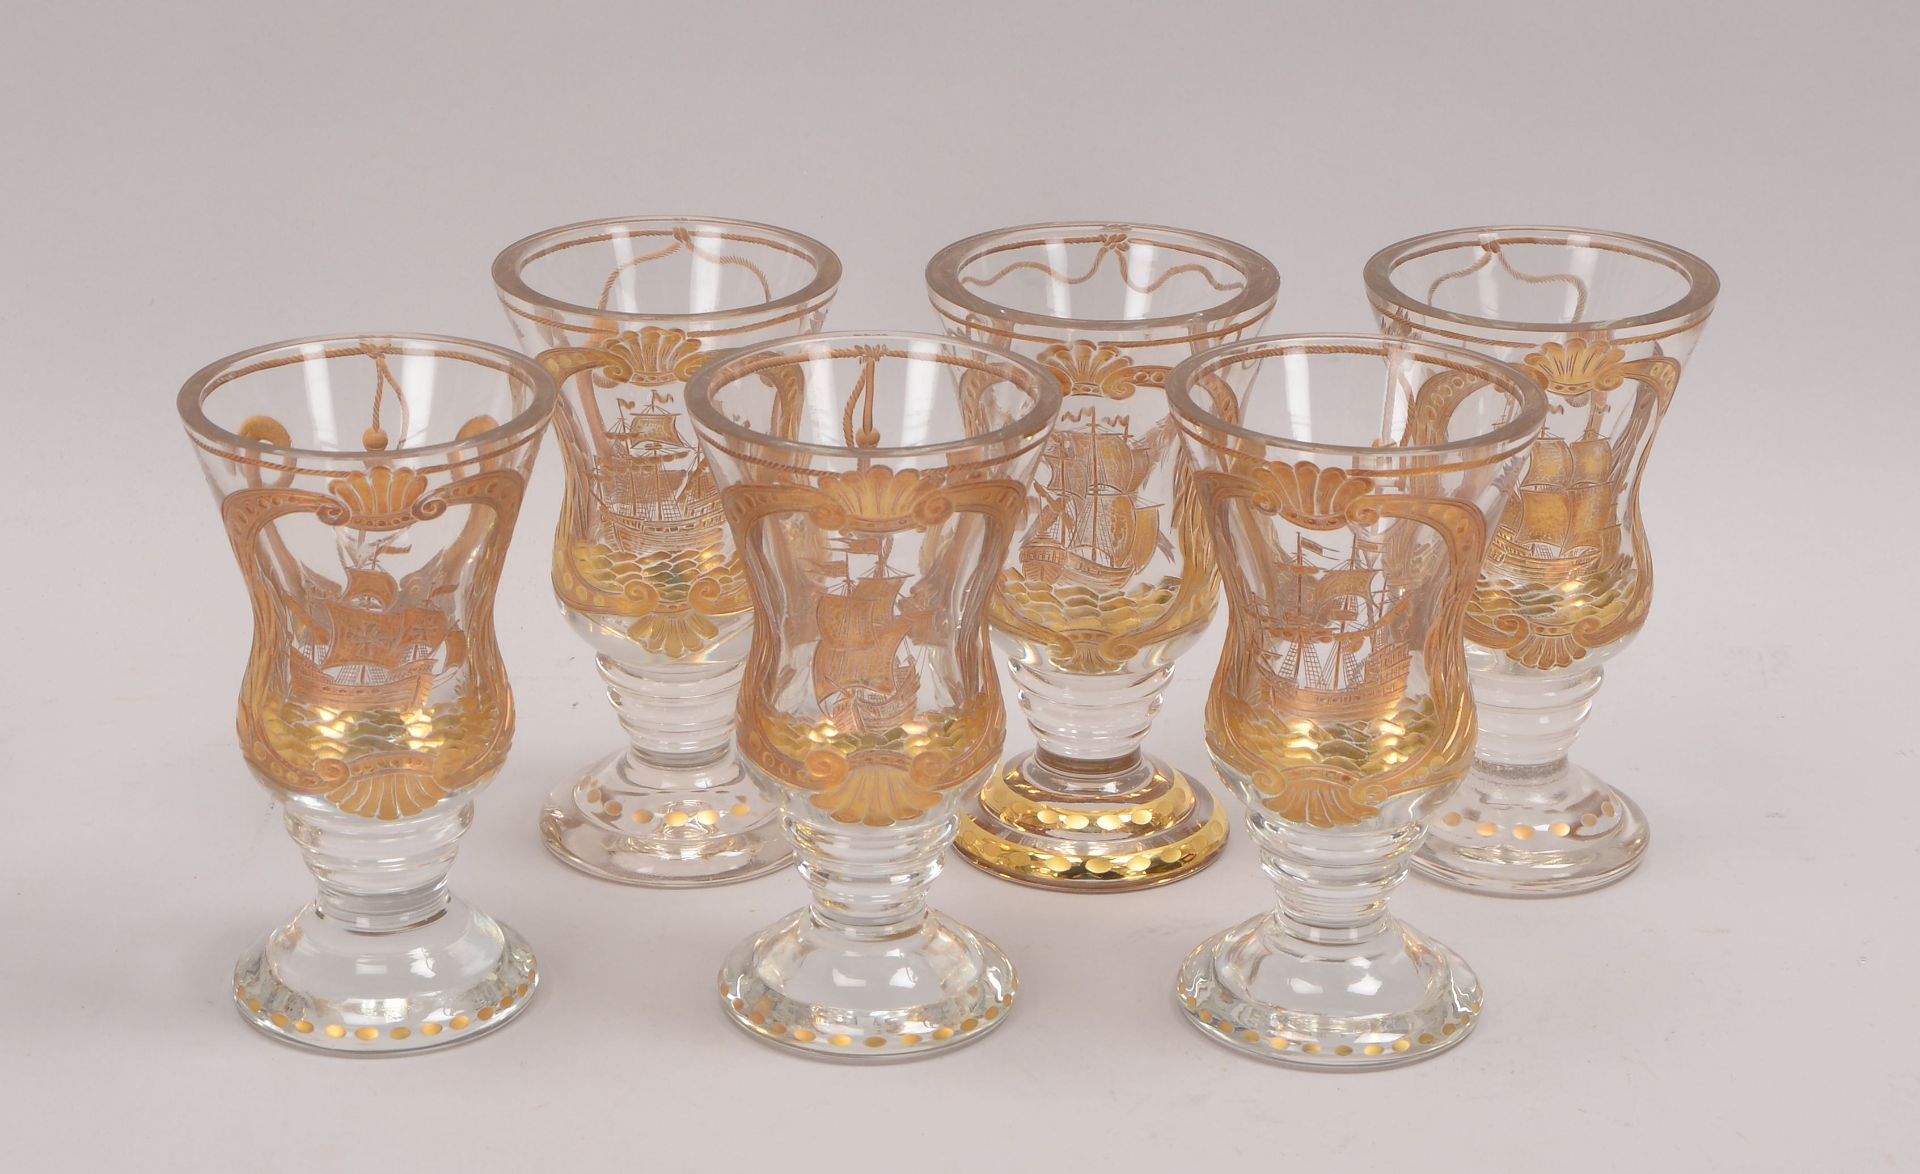 Satz Trinkgl&auml;ser (Tschechien), dickwandiges Glas, Wandung ge&auml;tzt und vergoldet, mit versch - Image 2 of 2